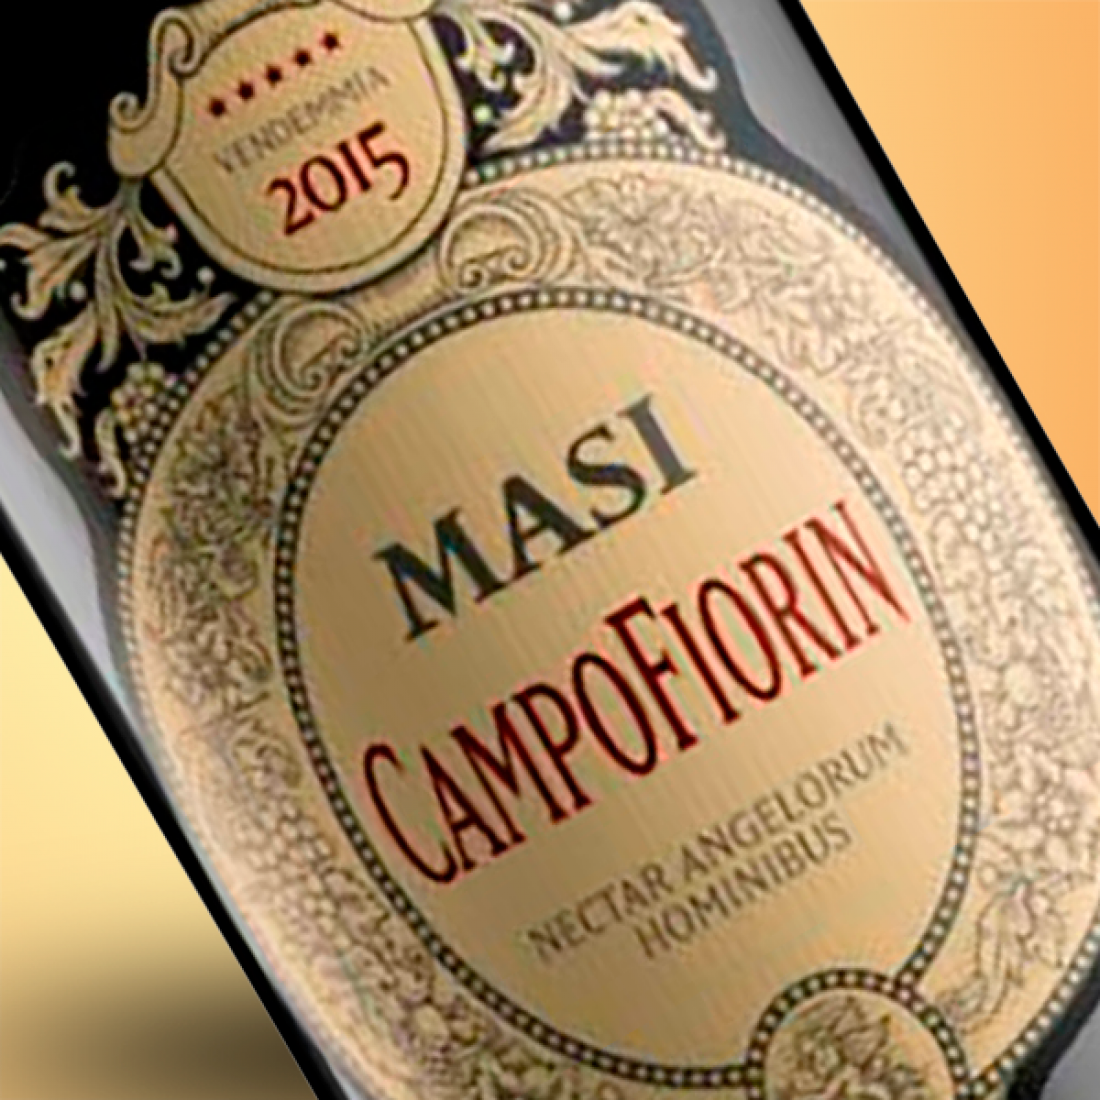 Masi campofiorin. Masi Nectar Campofiorin. Вино Masi Campofiorin 2017. Masi Nectar Campofiorin 2014. Красному Nectar Massi?.